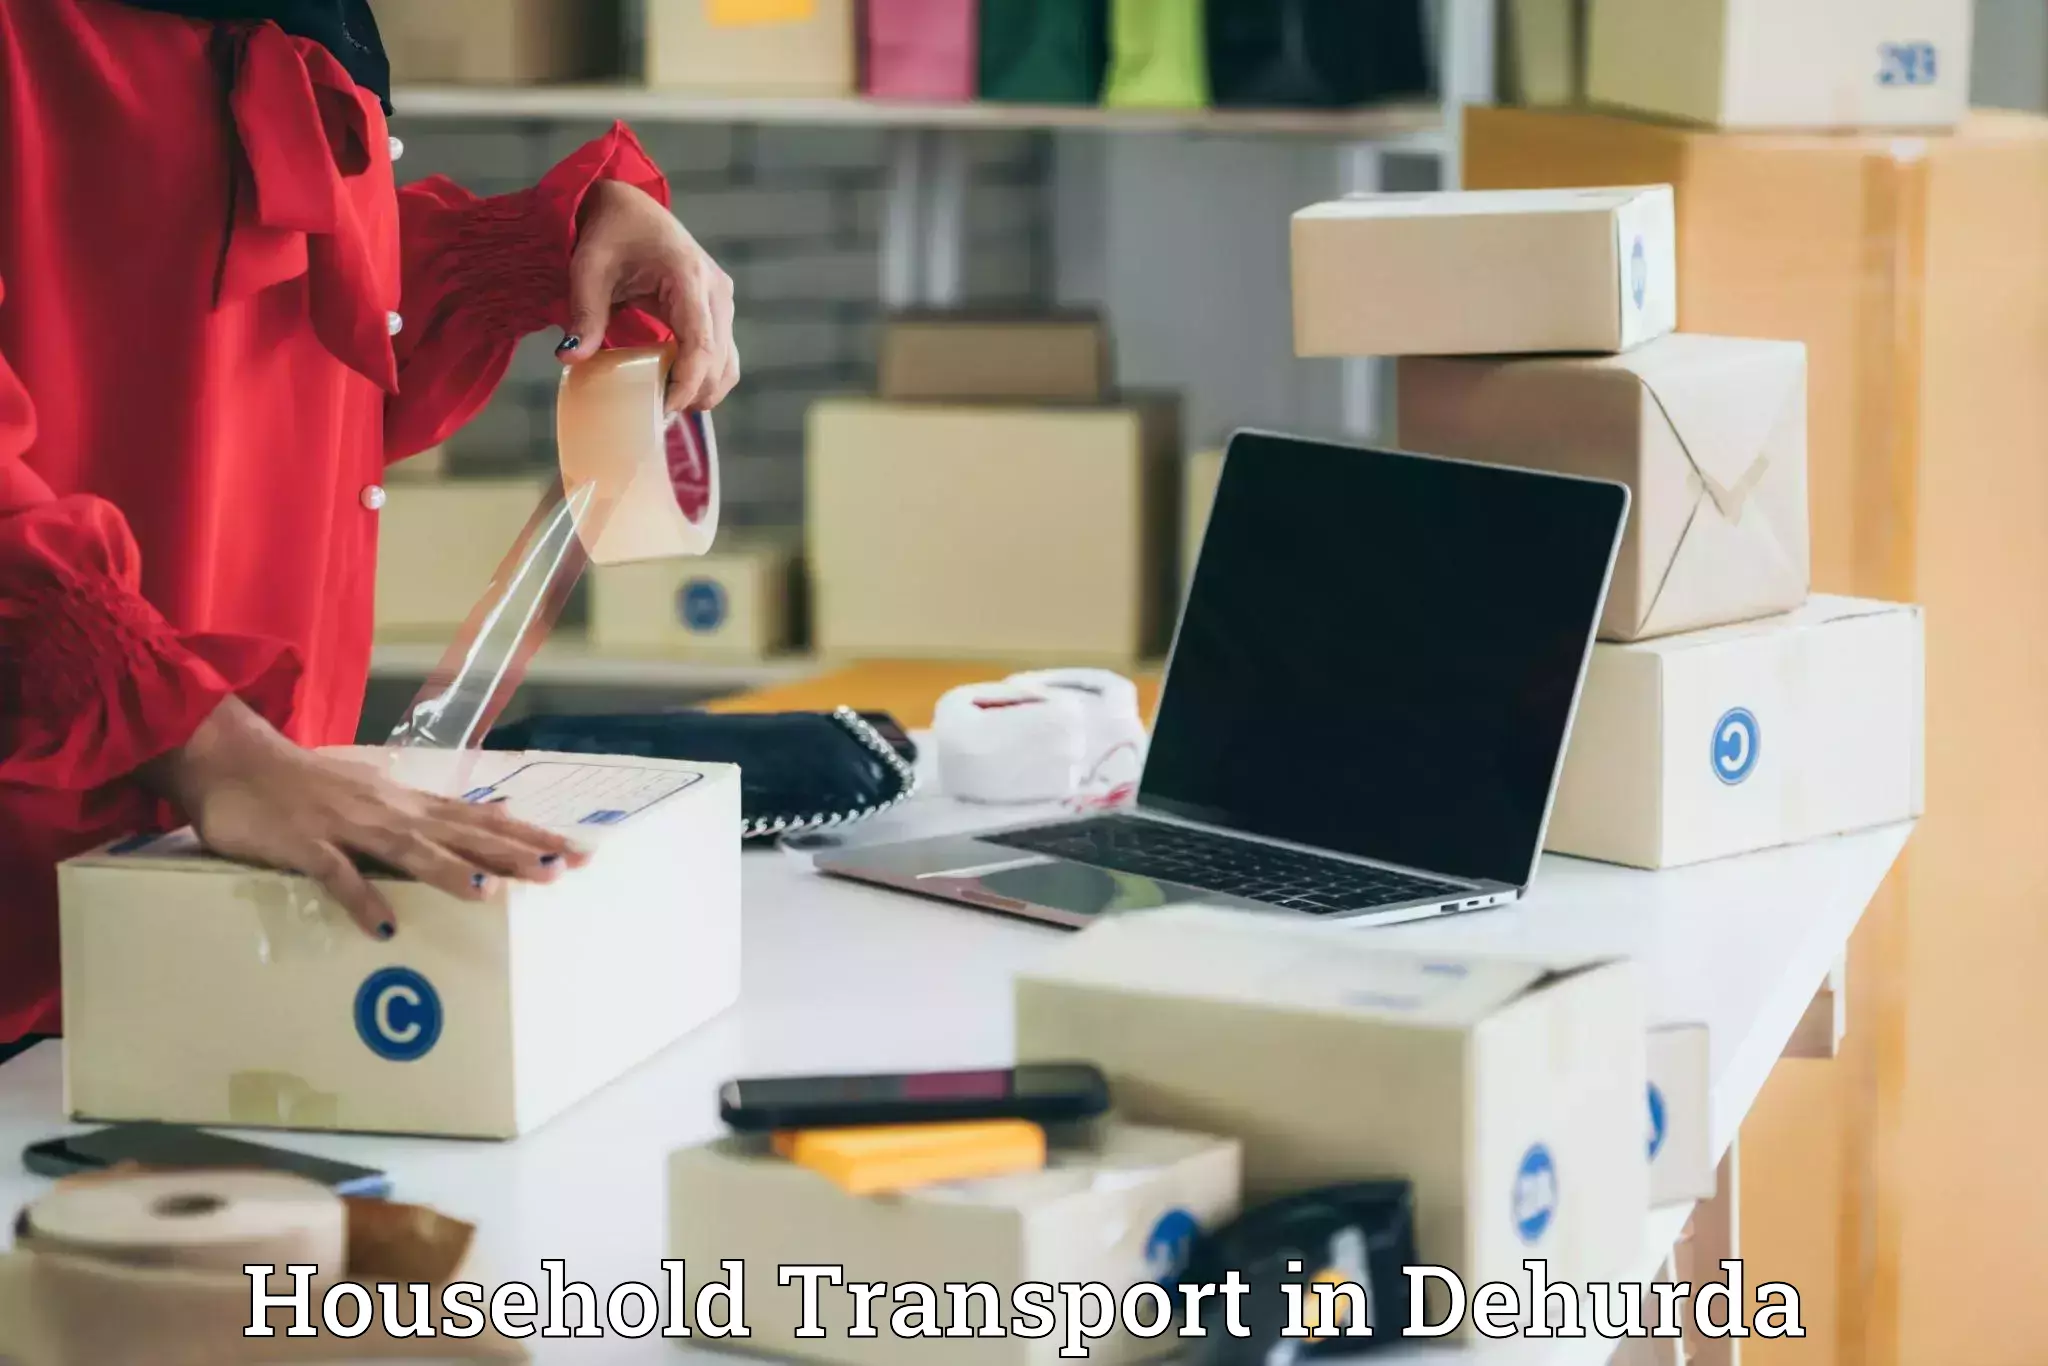 Household transport solutions in Dehurda